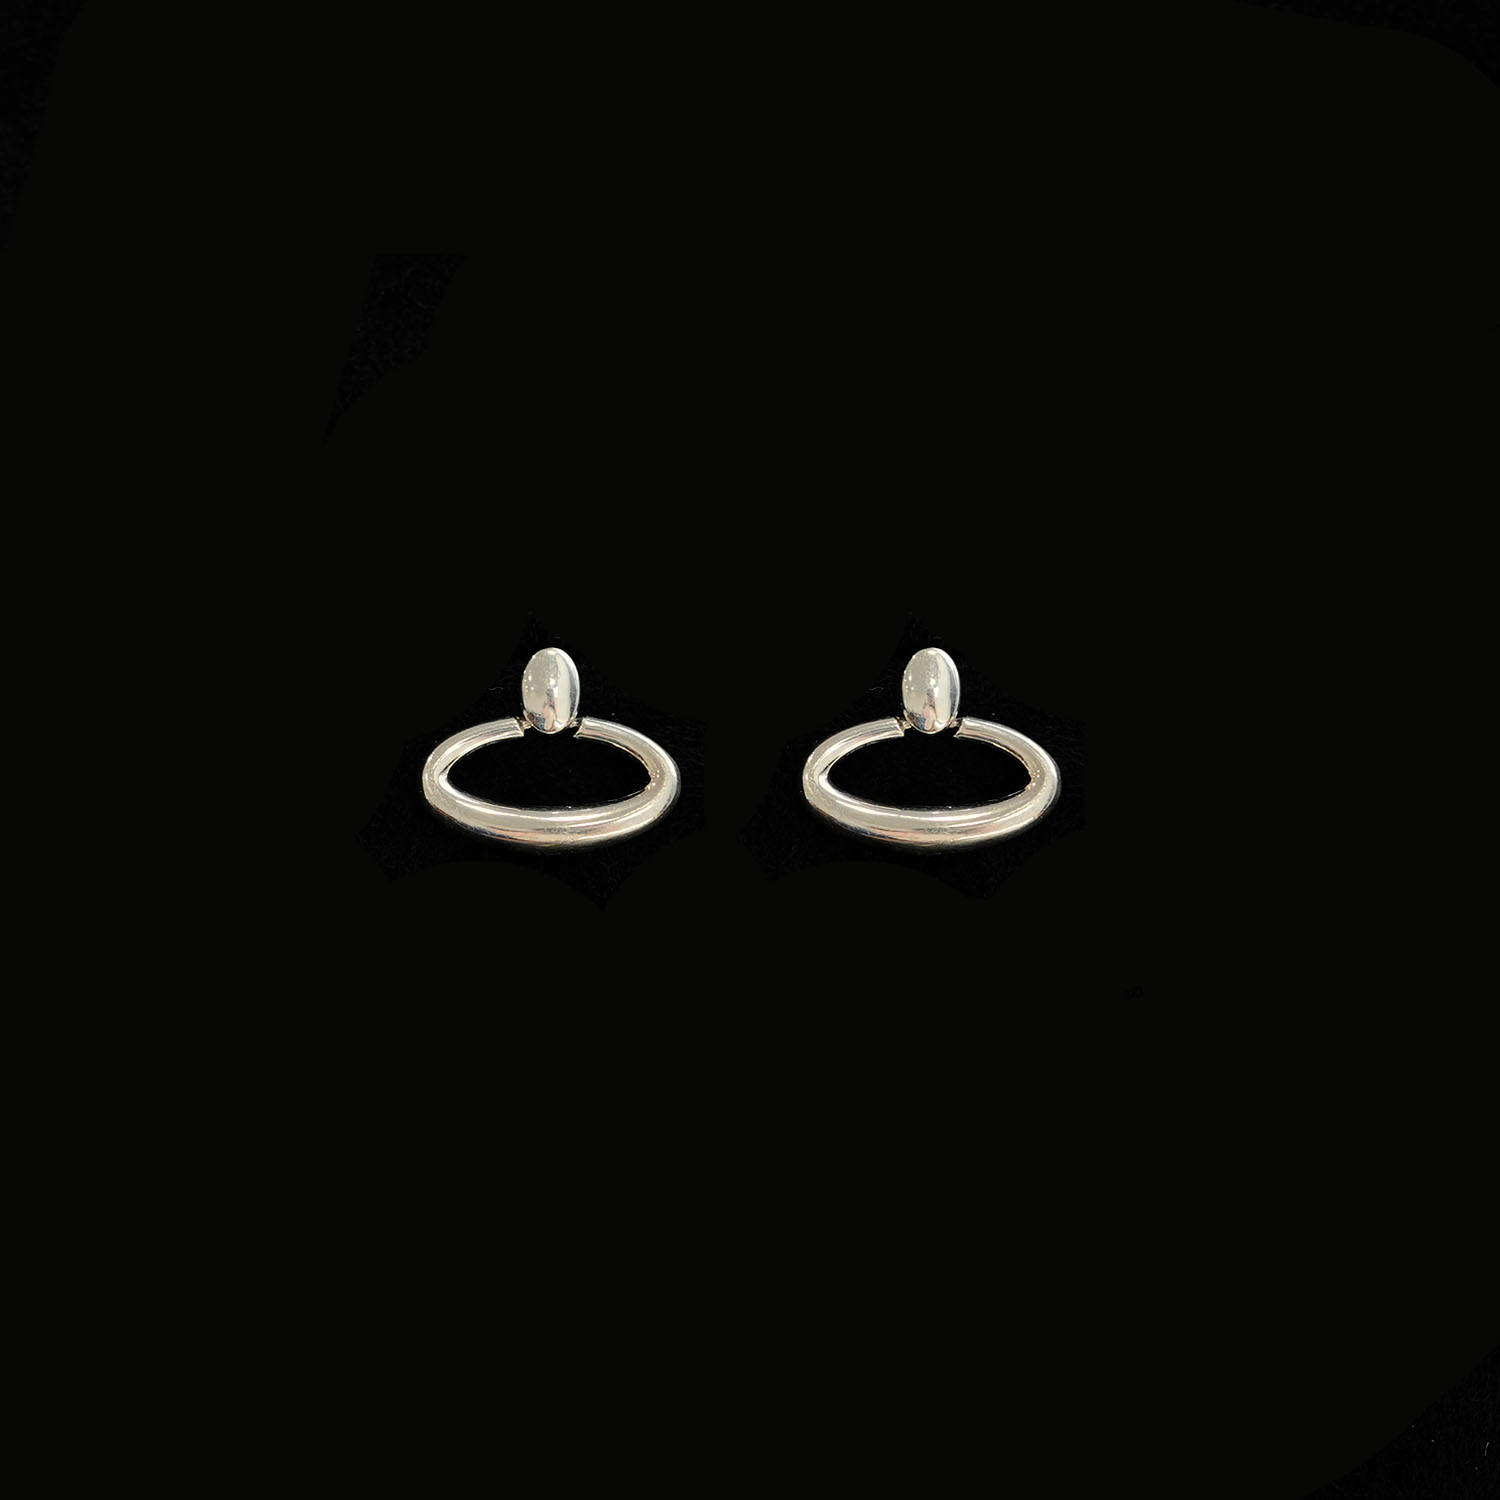 Oval ring ear